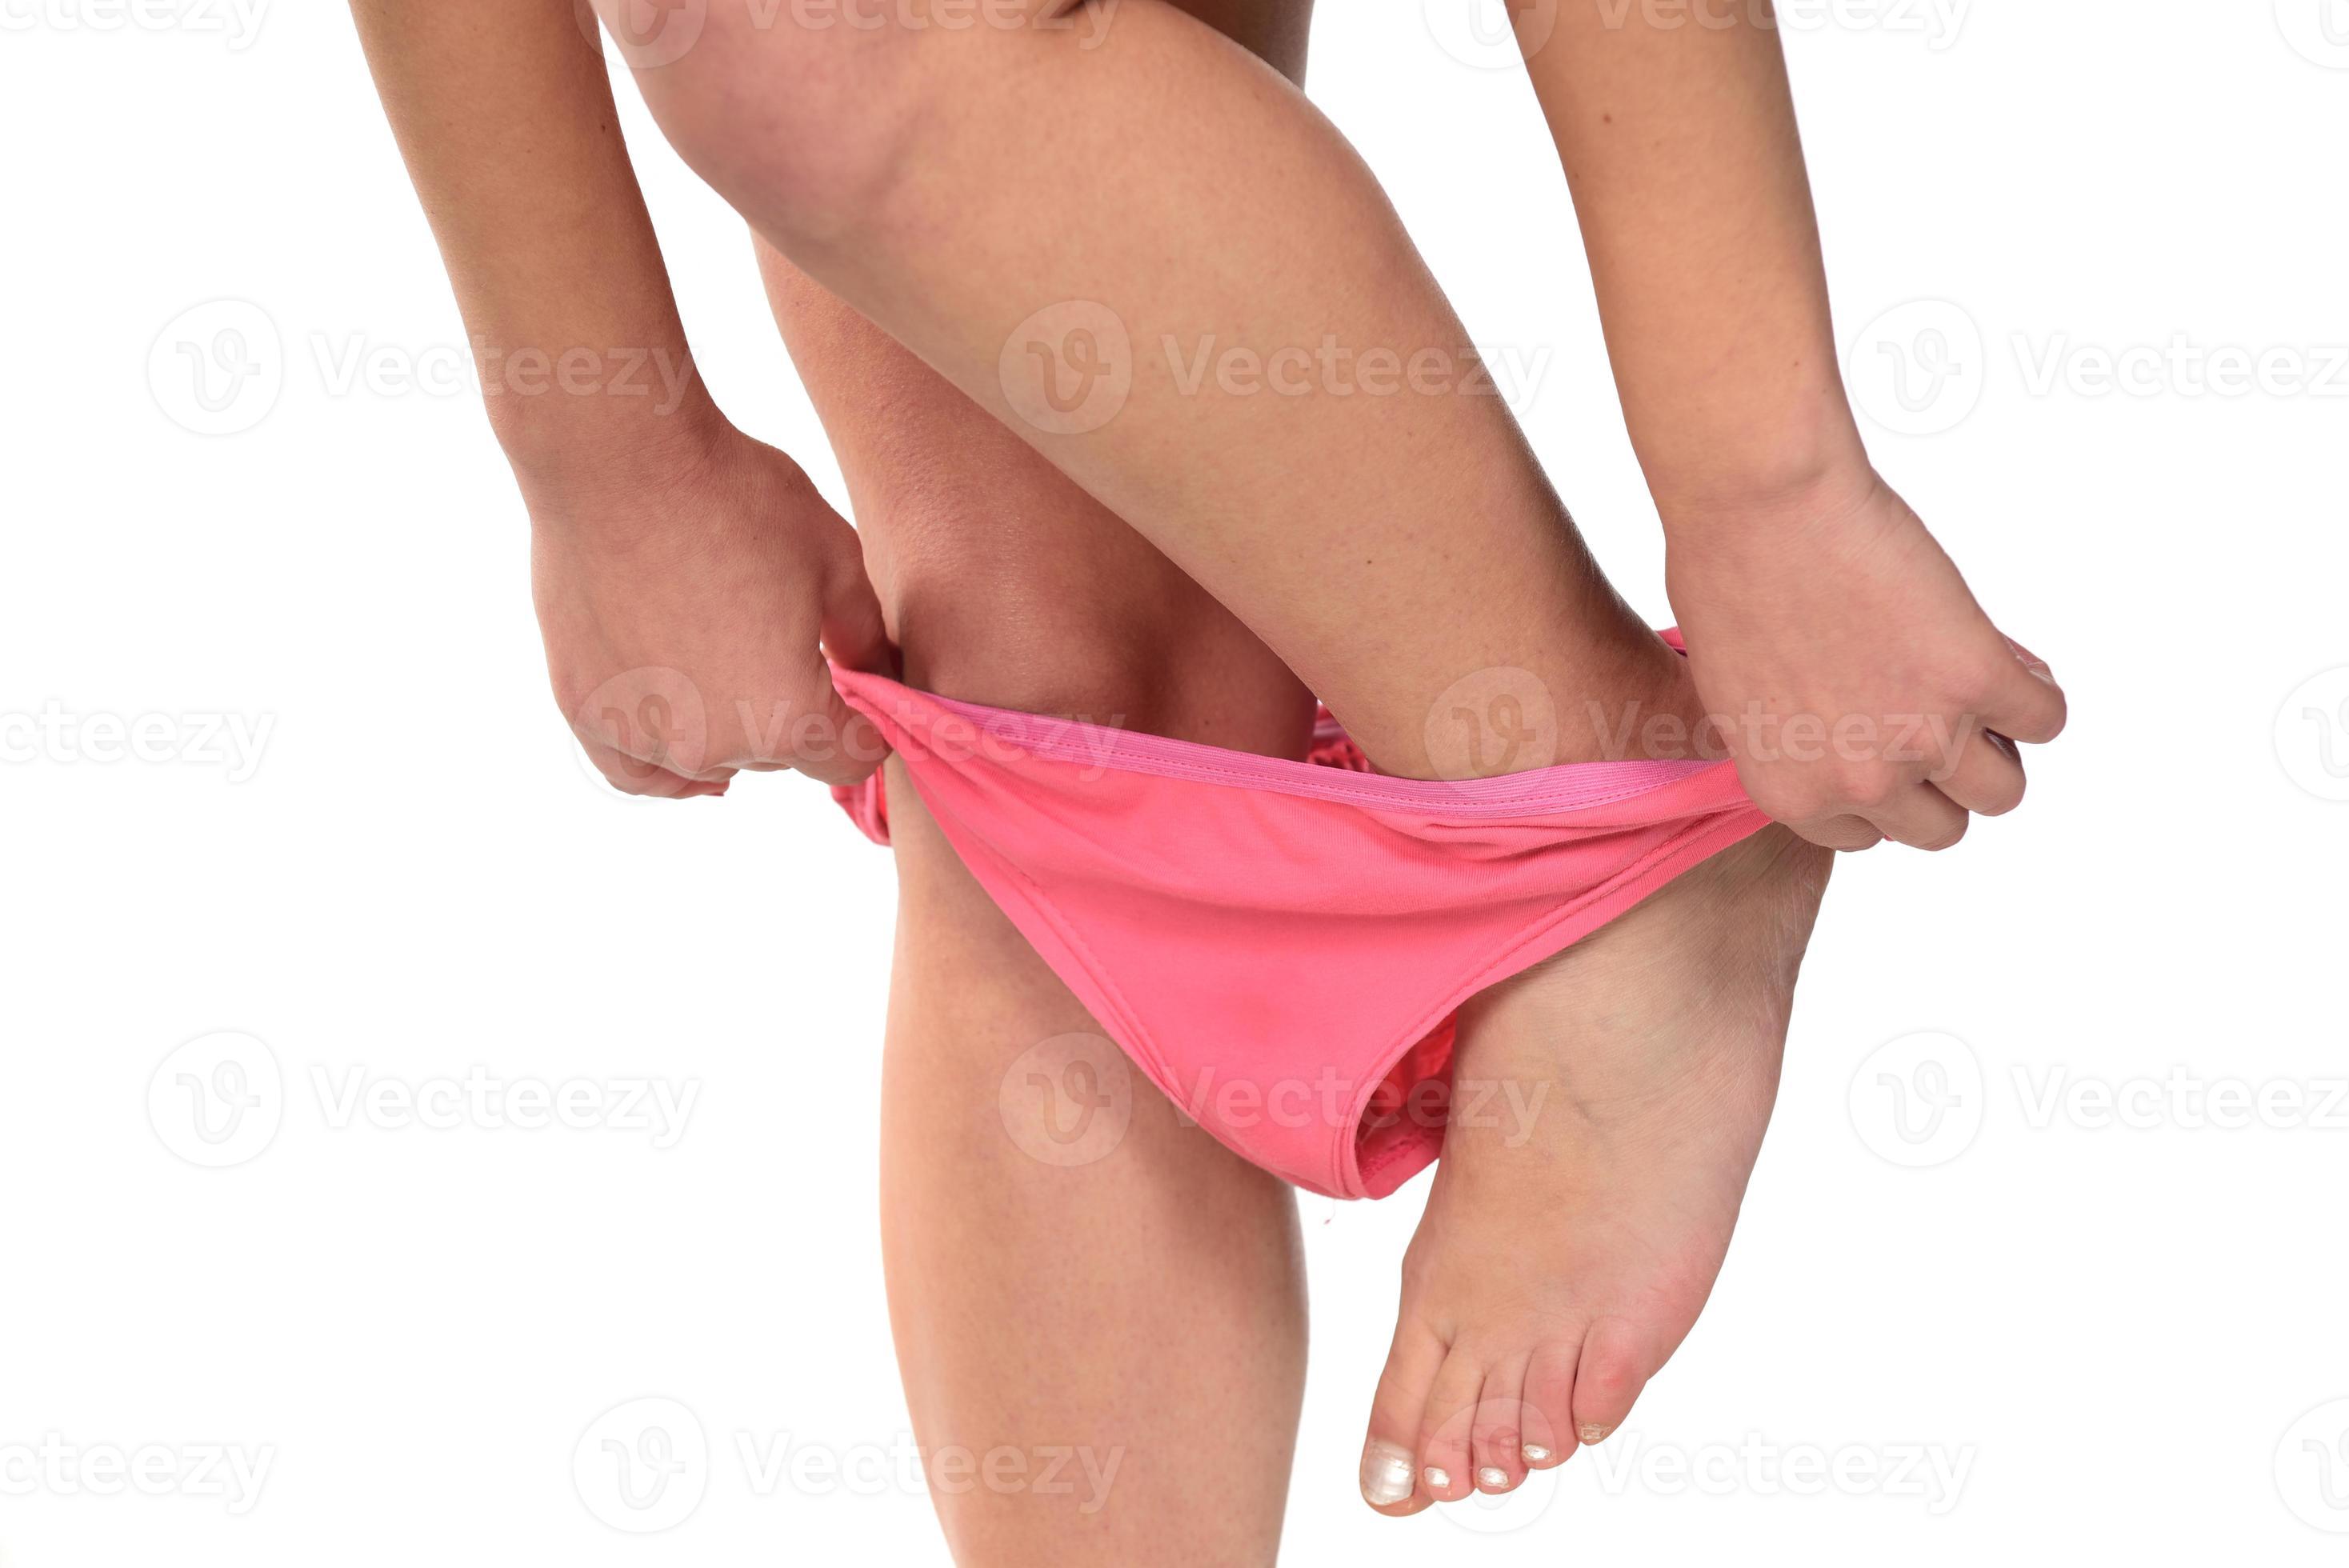 david ngog recommends Girls Take Panties Off